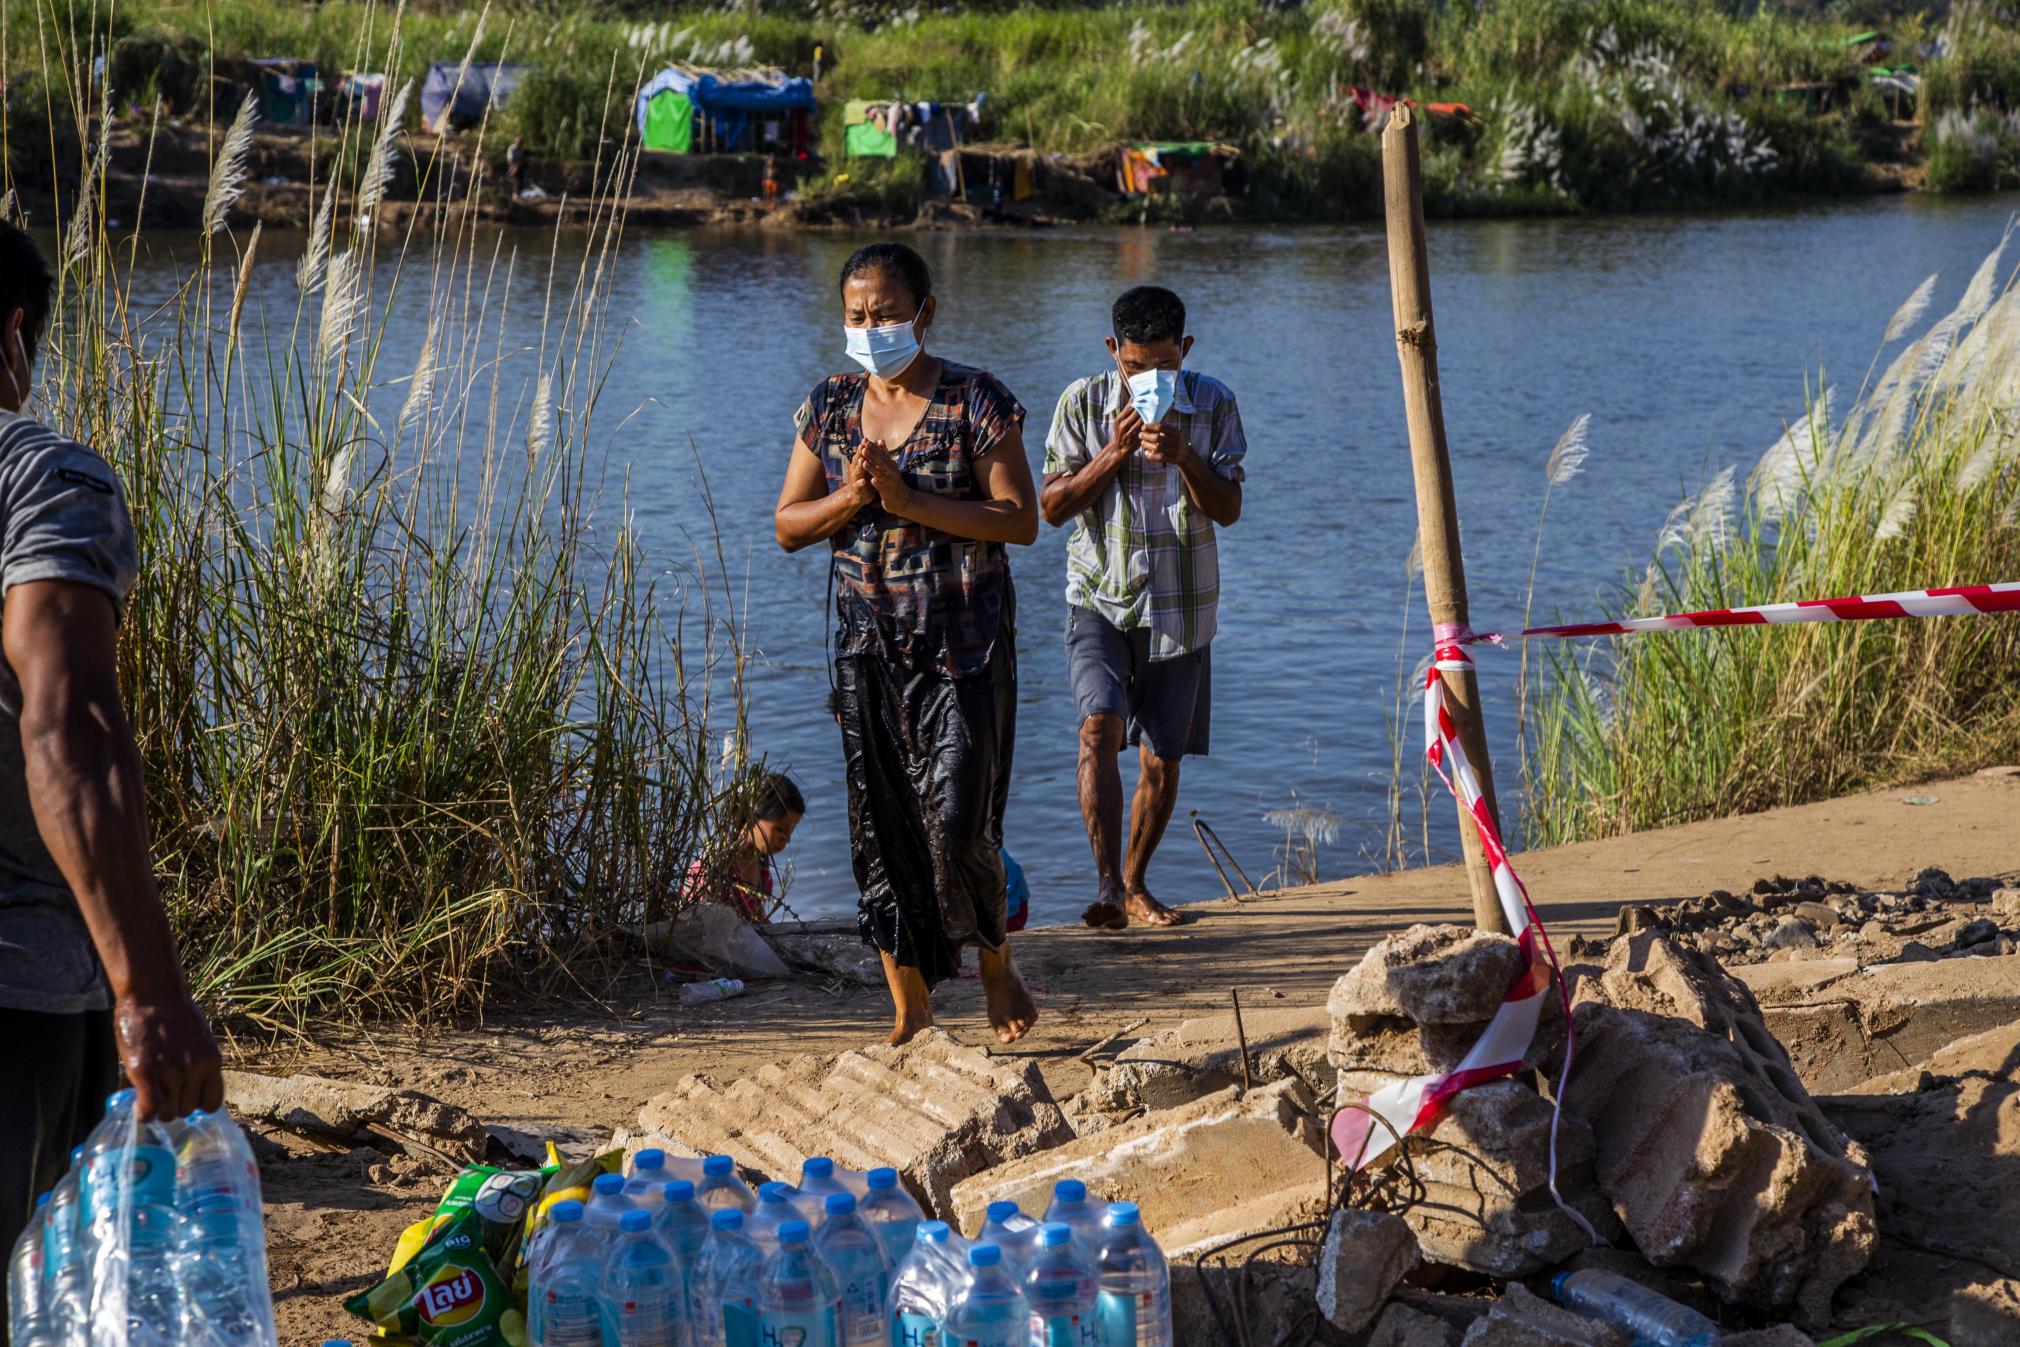 မြန်မာစစ်တပ်ရဲ့ ထိုးစစ်ကြောင့် နယ်စပ်တလျှောက်မှာ ခိုလှုံနေကြရတဲ့ ကရင်ပြည်နယ်က စစ်ဘေးရှောင် ဒုက္ခသည်တွေဟာ ထိုင်းနိုင်ငံထဲကို မြစ်ကို ဖြတ်ပြီး ရိက္ခာ အလှူငွေလာယူကြပါတယ်။ ဓာတ်ပုံ−အေသင်ဇော်ဇော်။ ဇန်နဝါရီ 2022